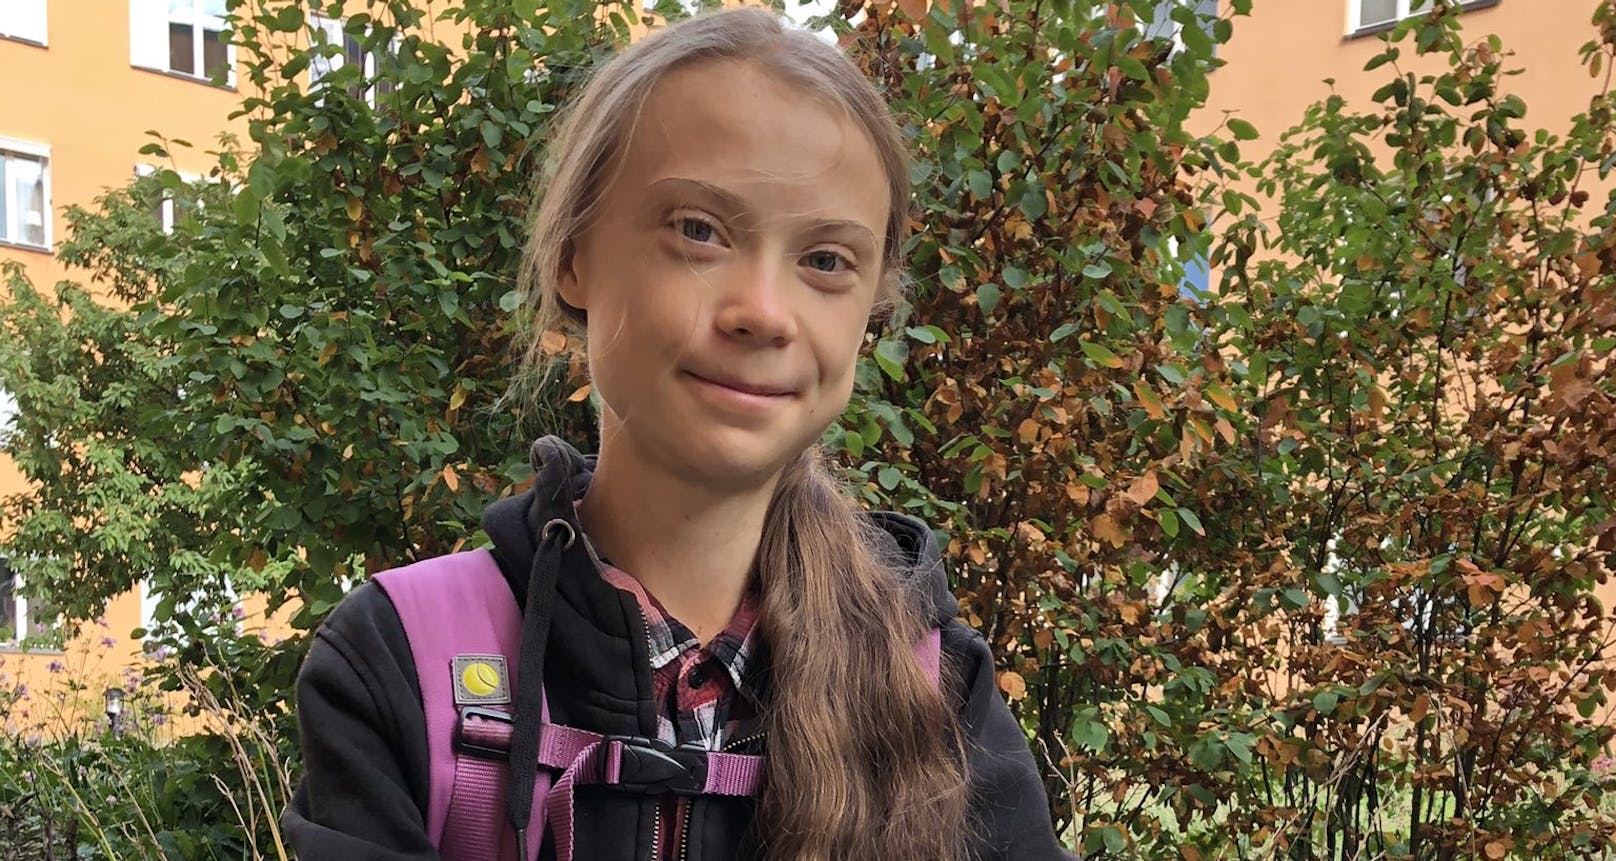 Die 17-jährige Greta Thunberg kehrte nach einem Jahr Absenz wieder in die Schule zurück. Sie setzt sich weiterhin für das Klima ein.